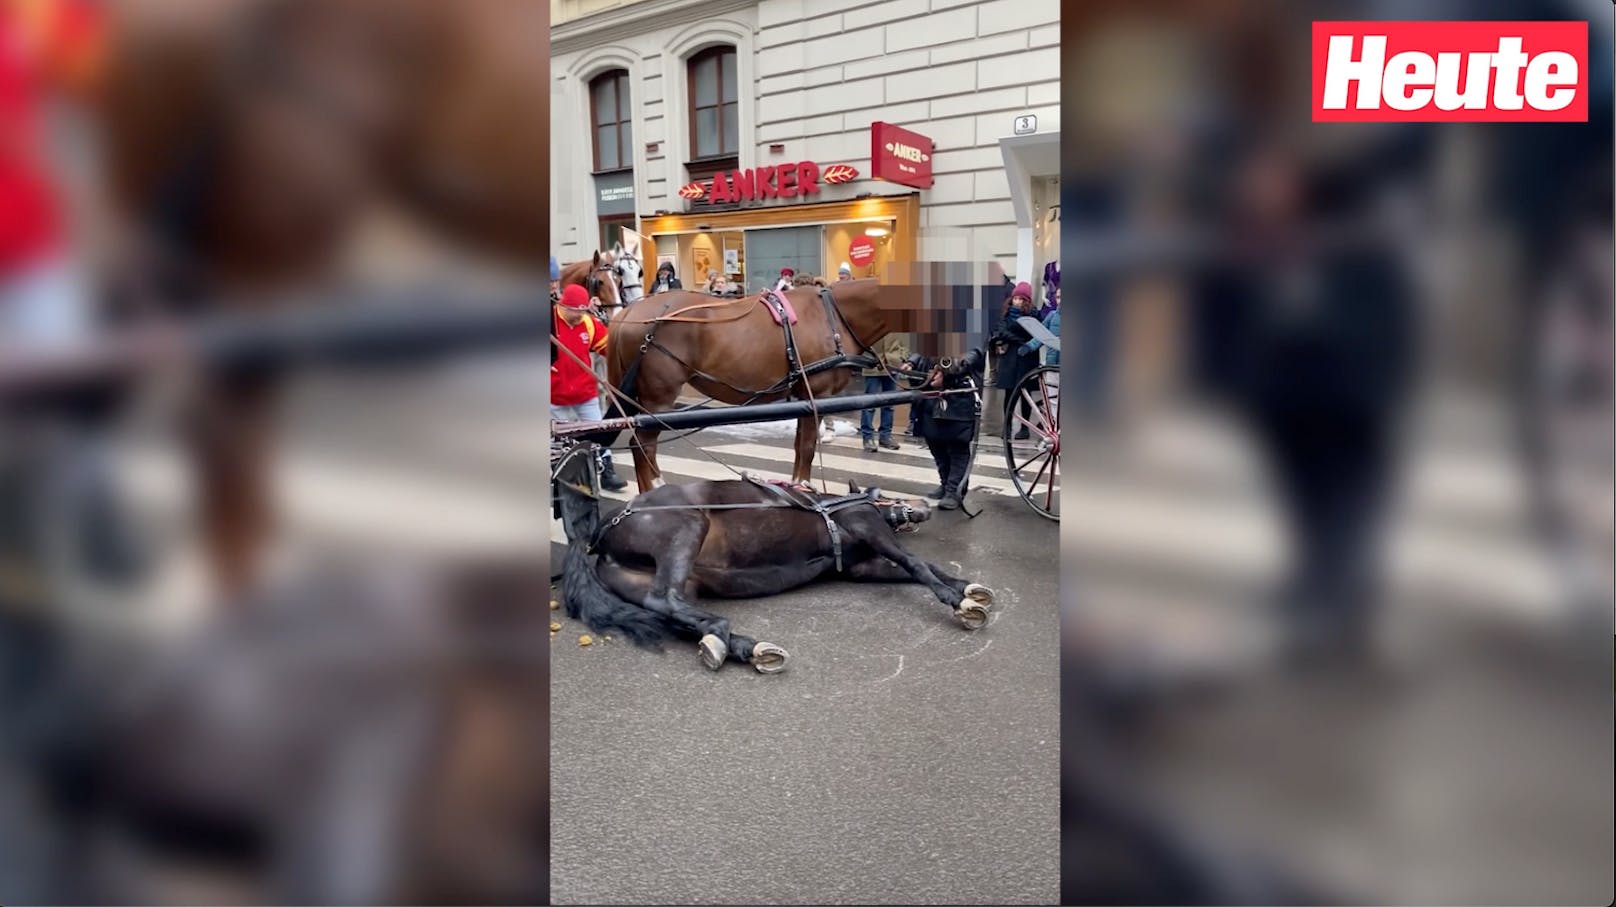 In der Wiener City stürzte ein Fiakerpferd, konnte nicht aufstehen. Die Passagiere blieben einfach in der Kutsche sitzen.